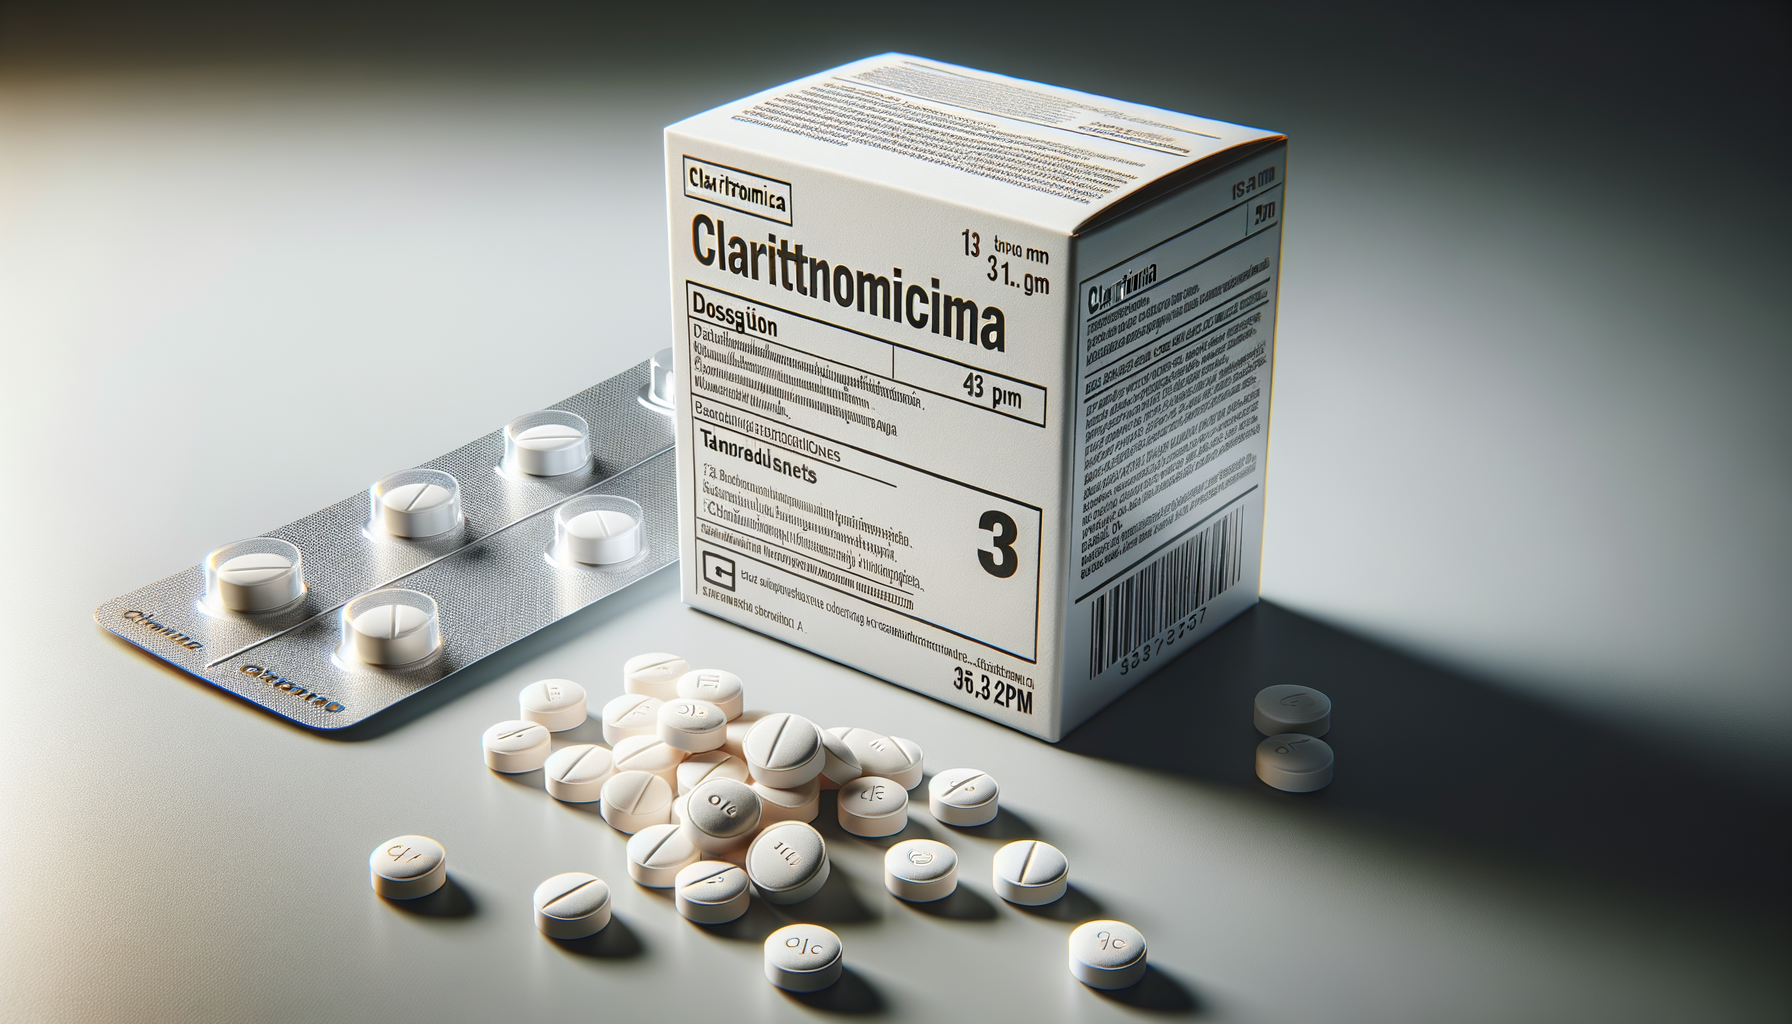 Quali vantaggi offre la claritromicina rispetto all’eritromicina?